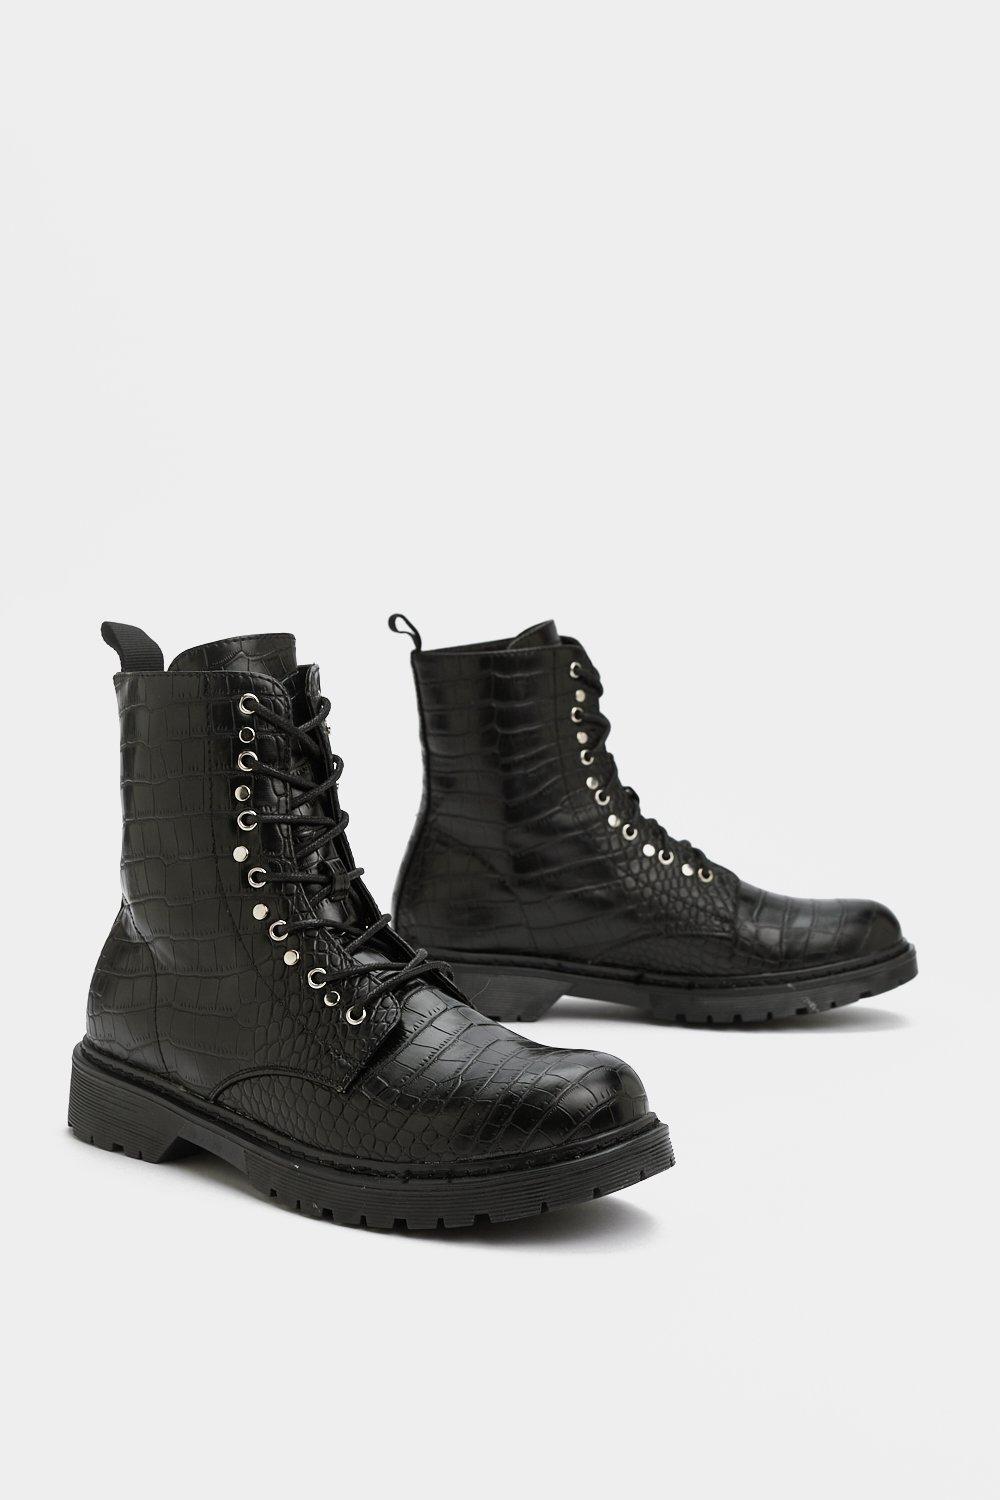 black croc combat boots